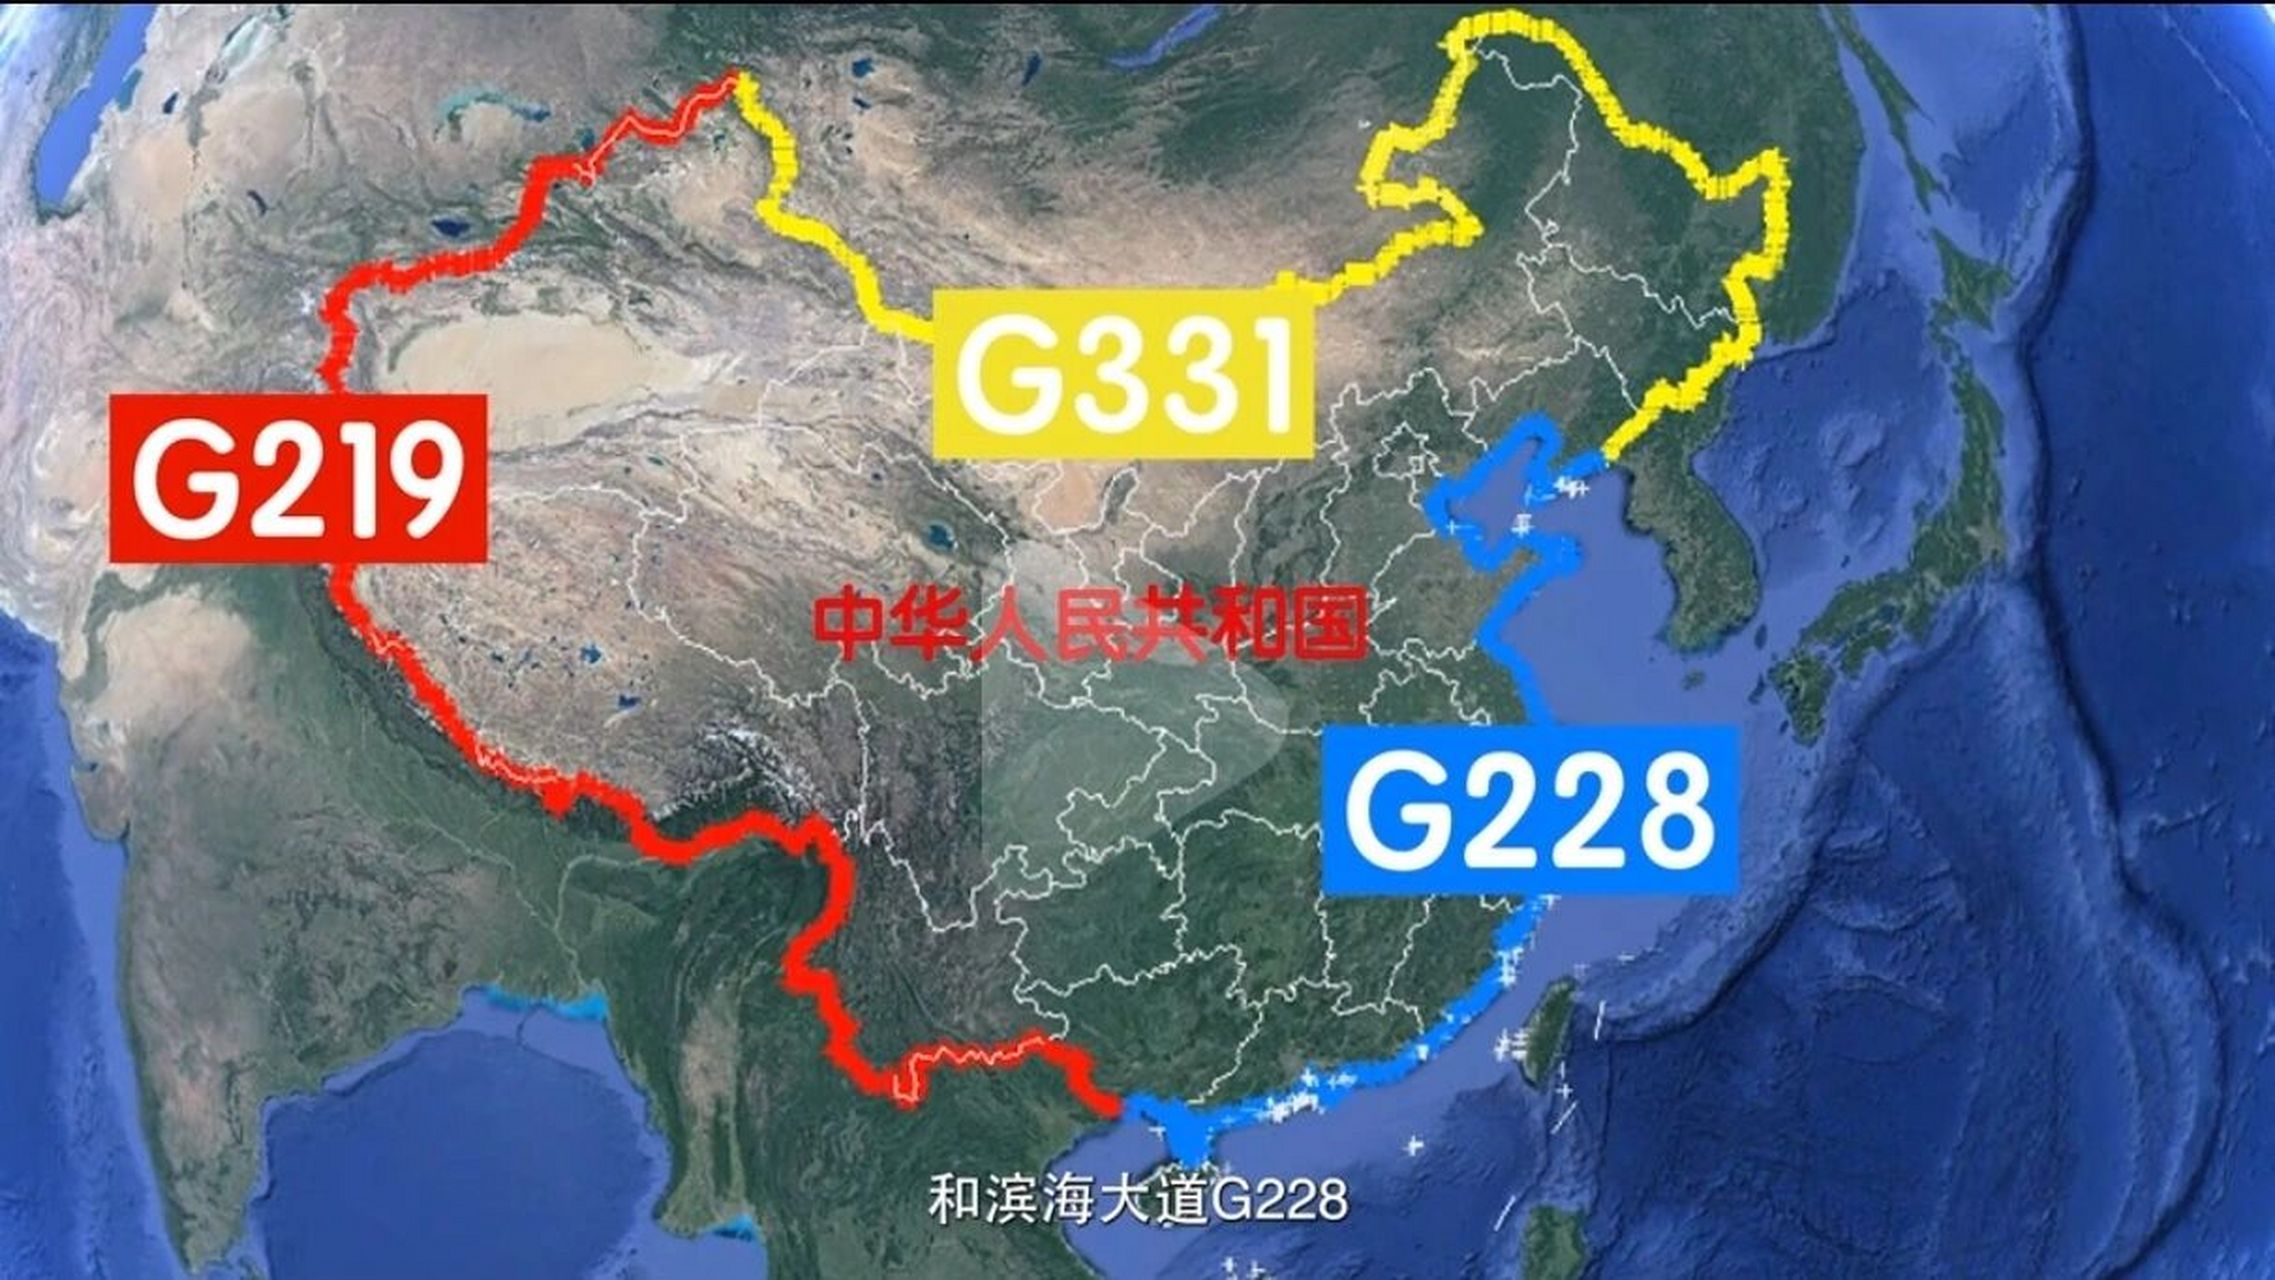 听说可以沿着这3条国道环游中国 听说可以沿着这三条国道环游中国